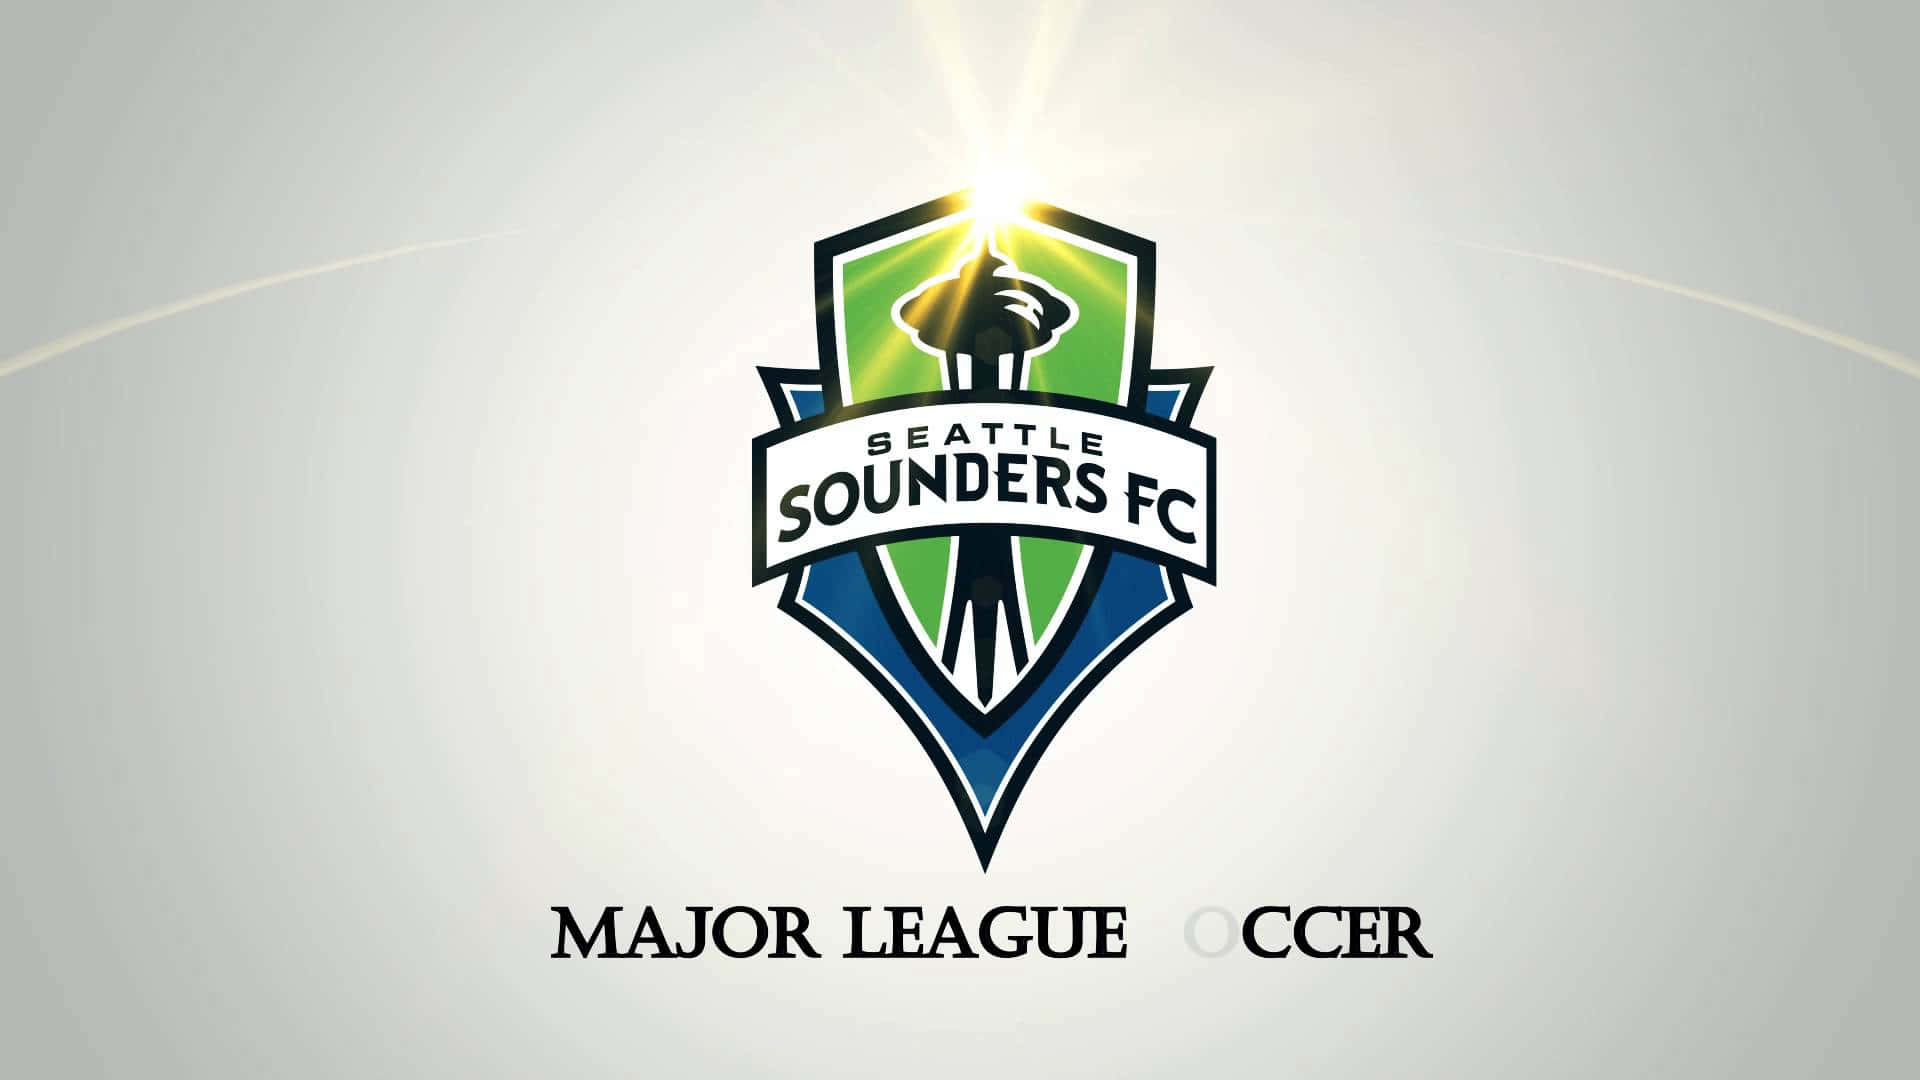 Seattlesounders Fc Della Major League Soccer Sfondo